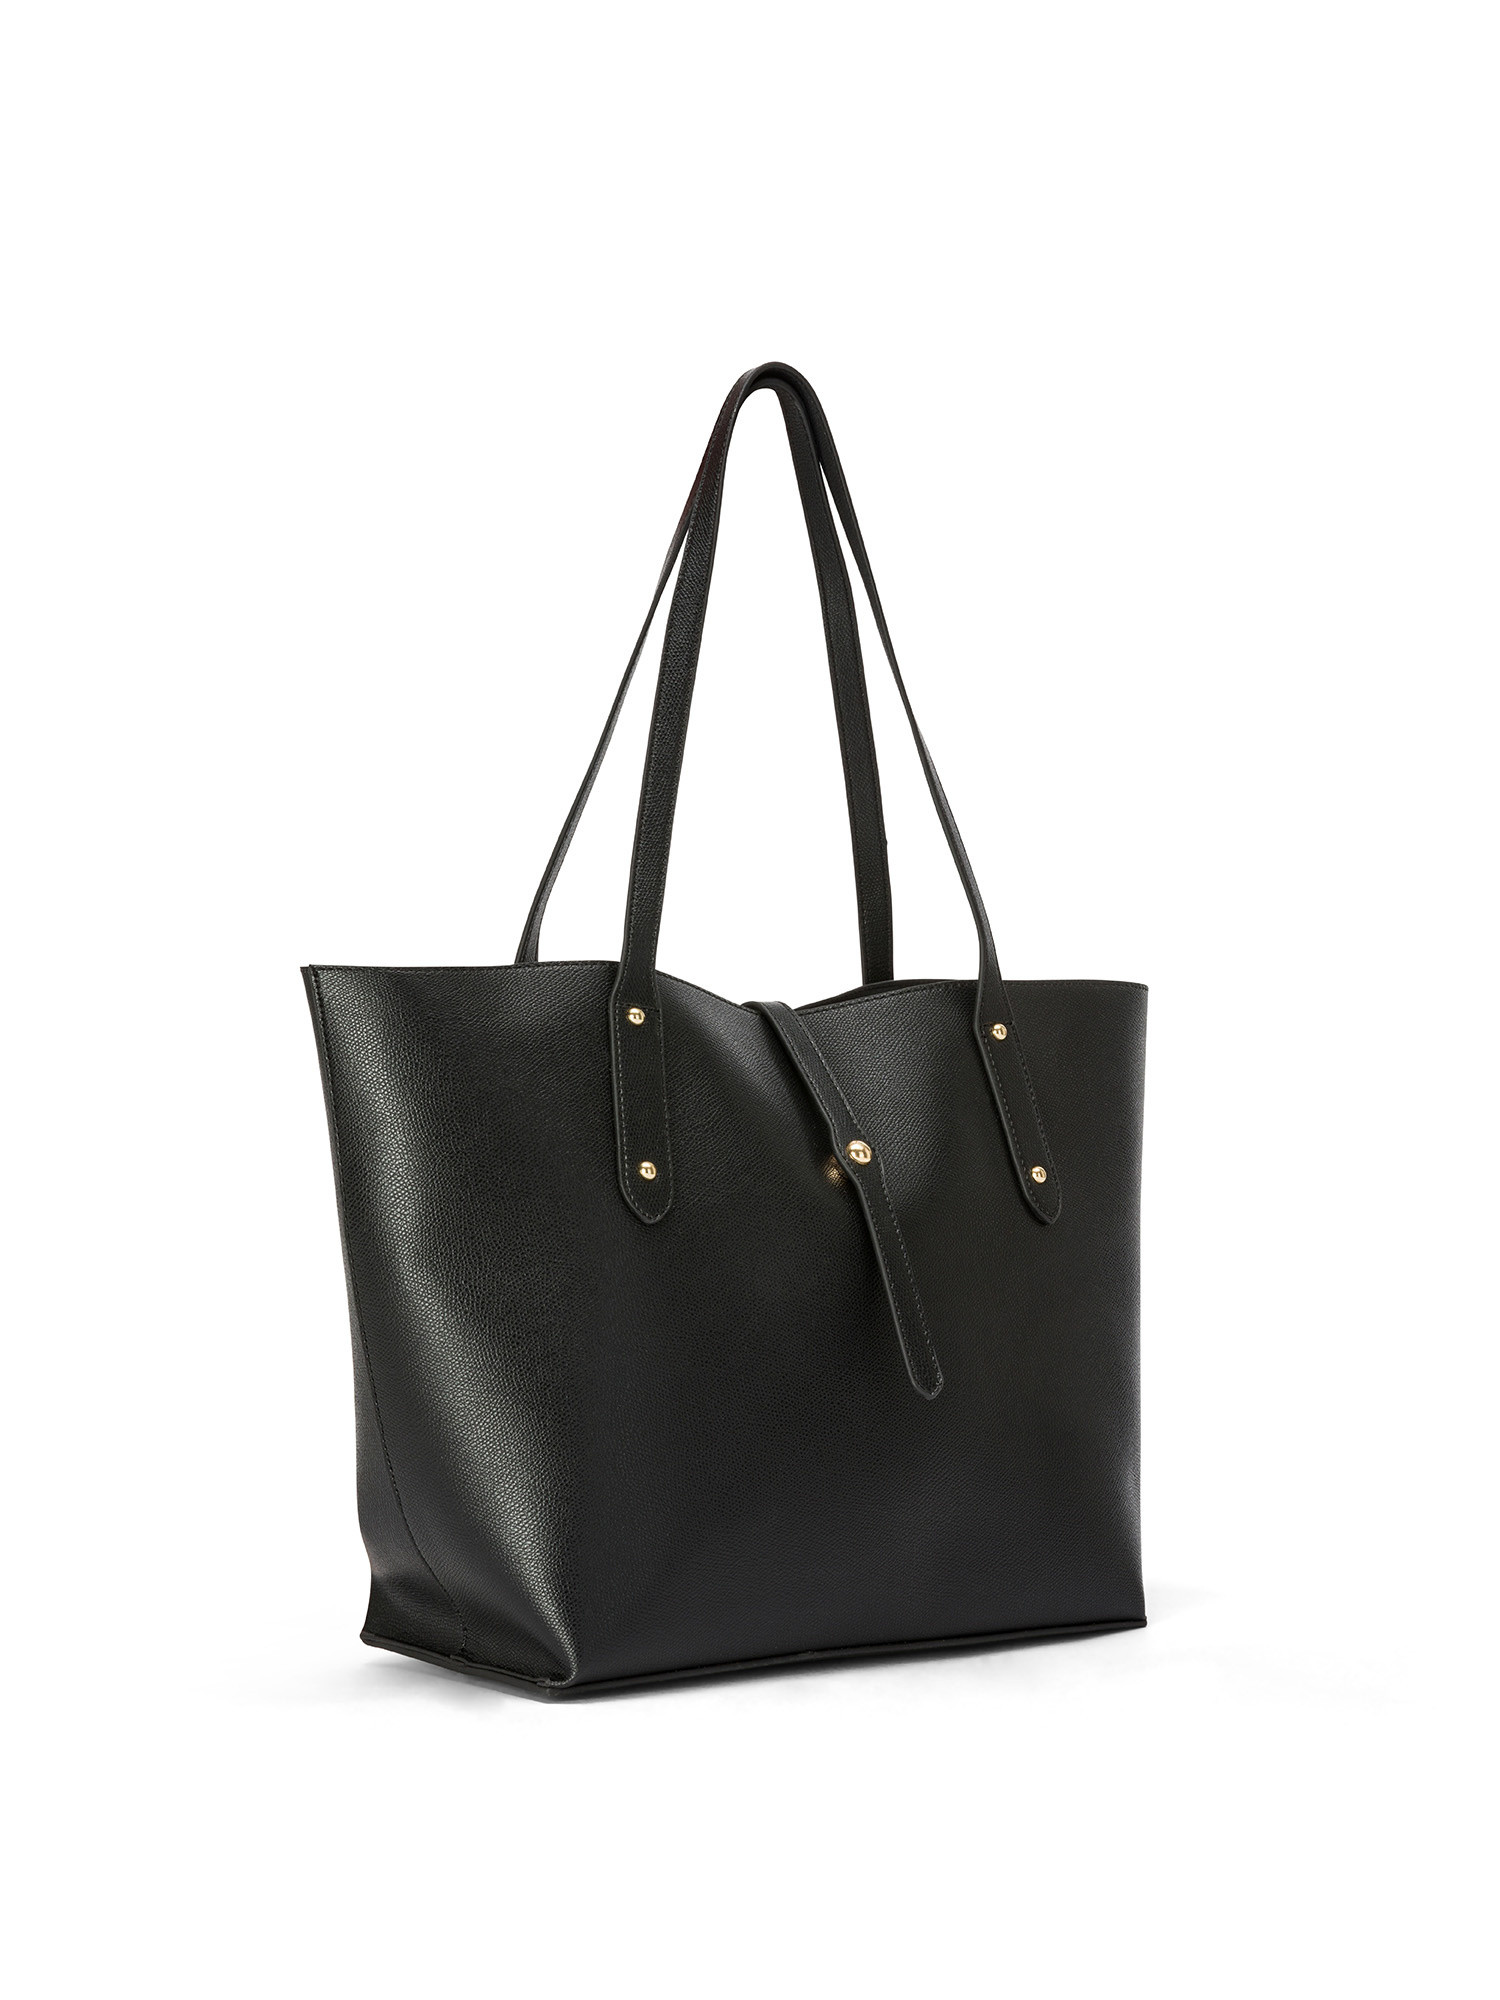 Koan - Shopping bag, Black, large image number 1